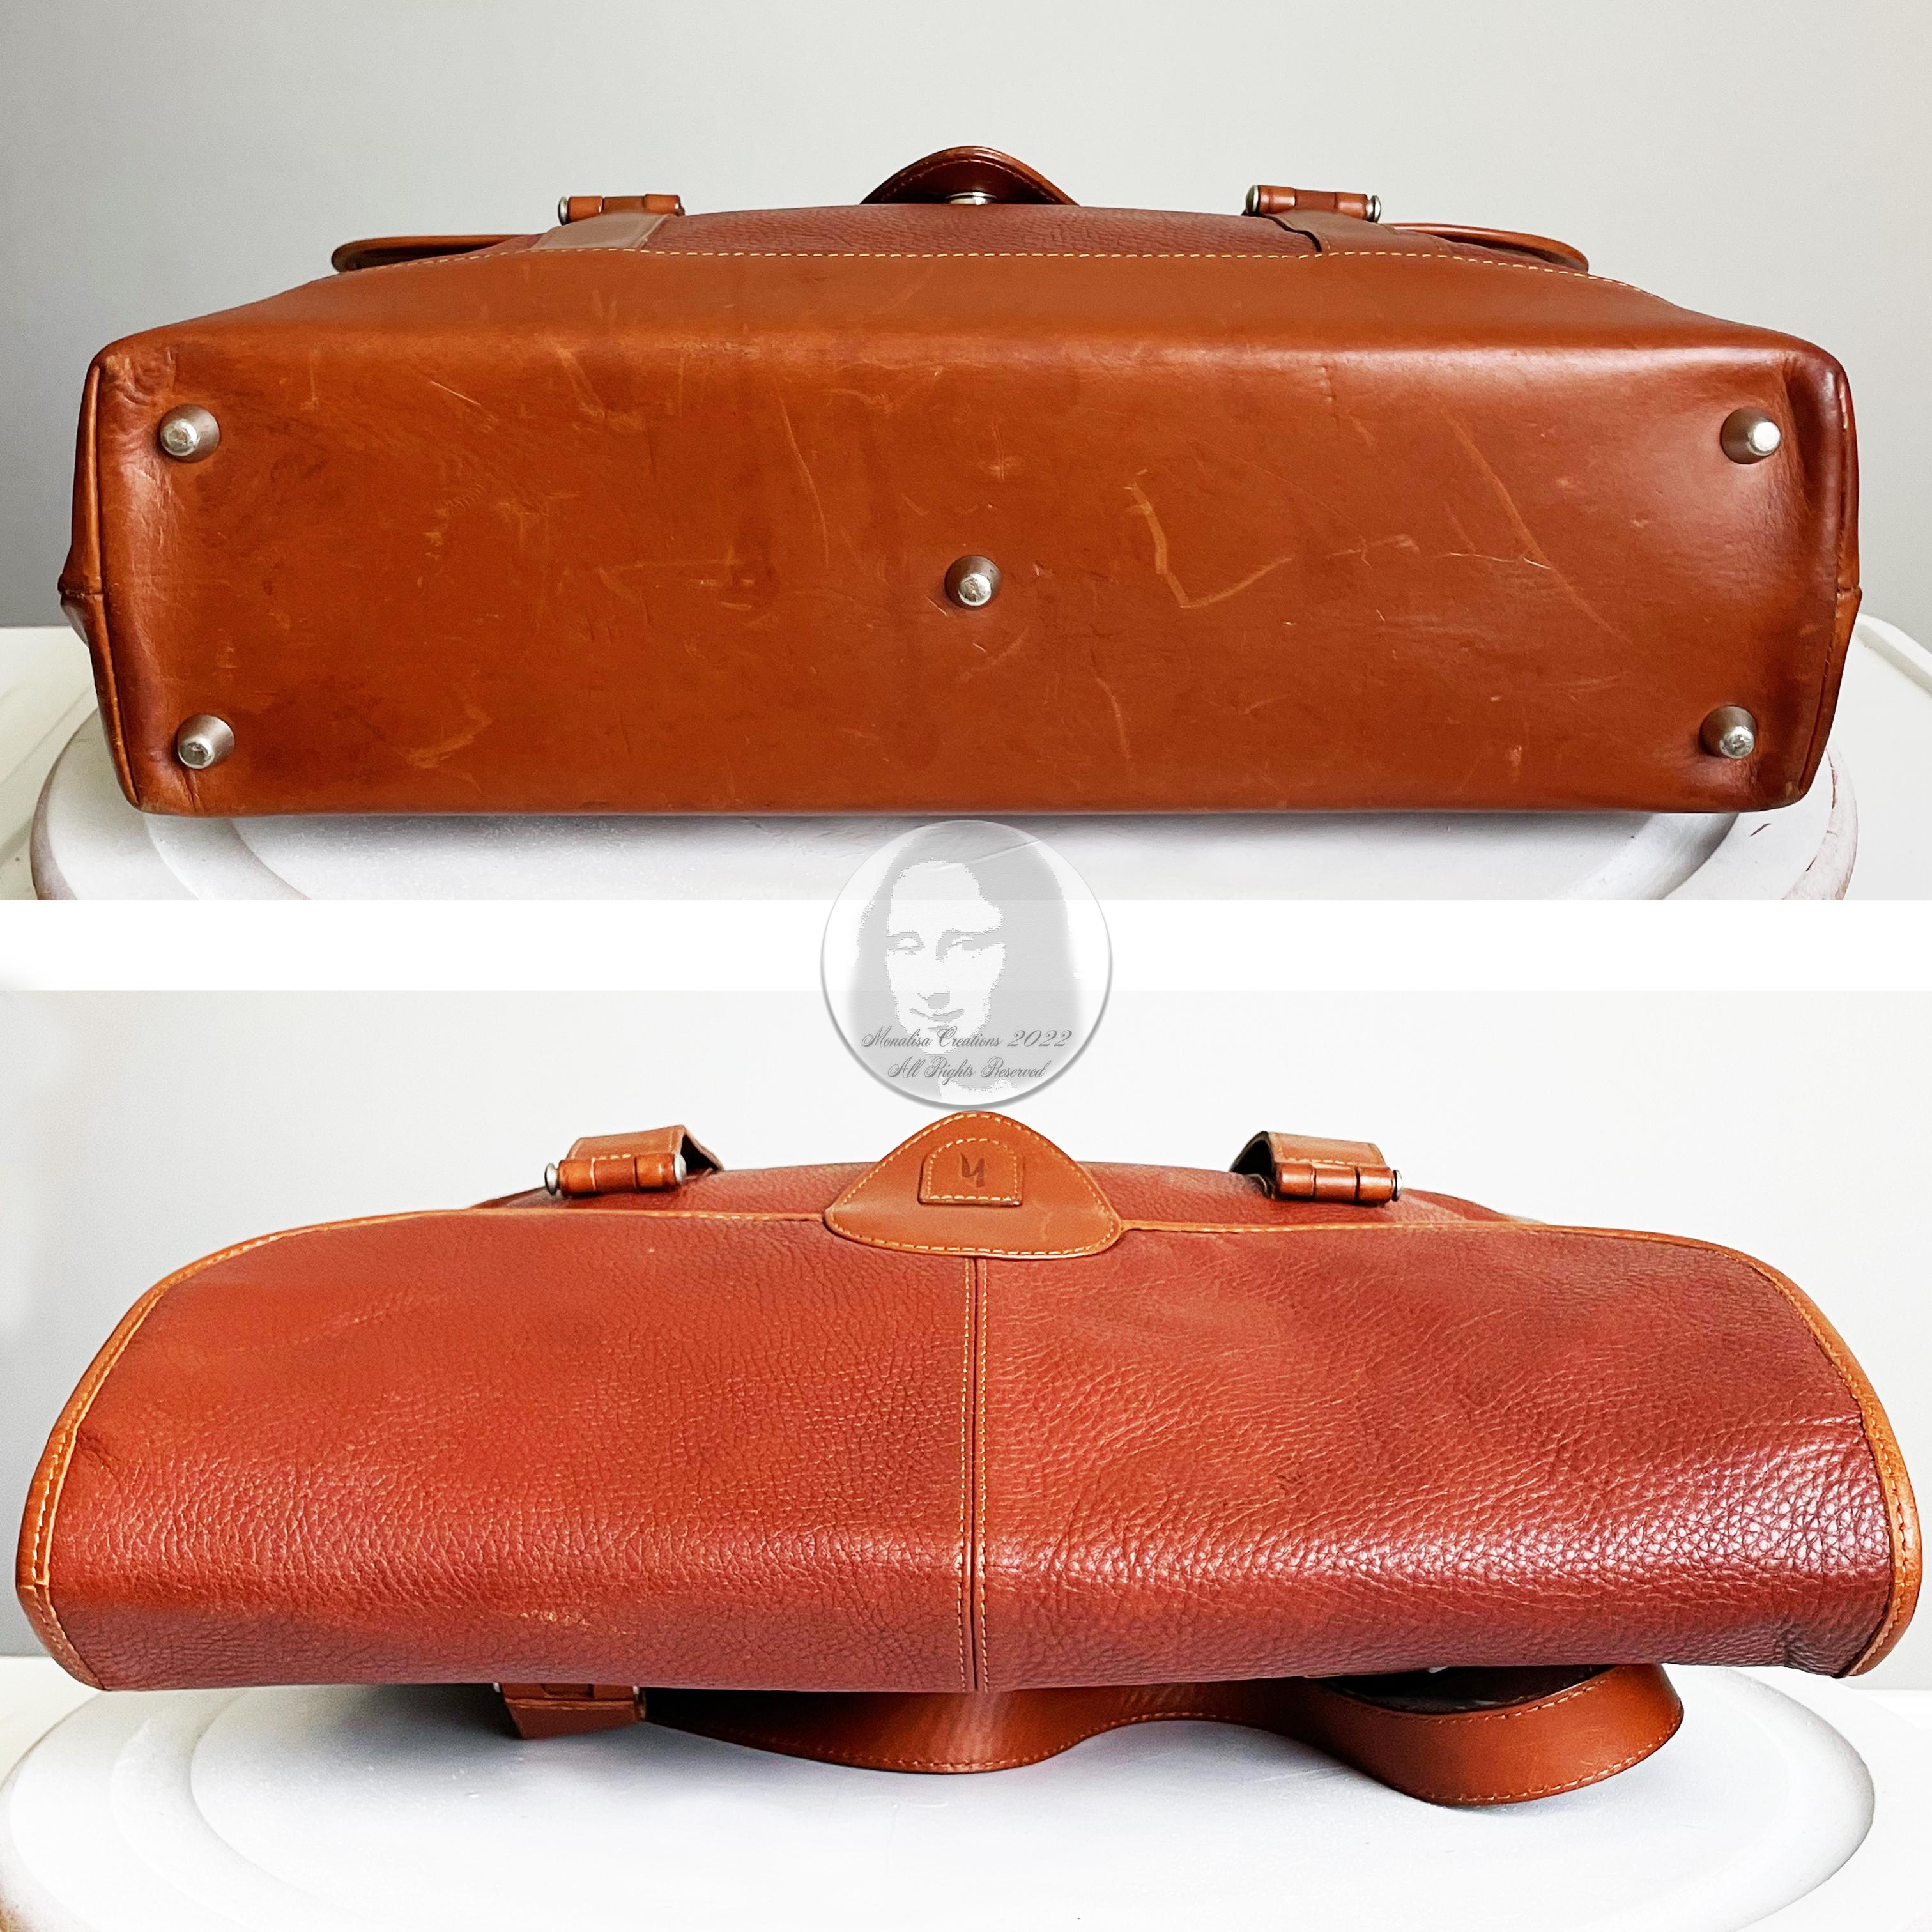 Hartmann Business Bag Briefcase Computer or Shoulder Bag British Tan Leather 6